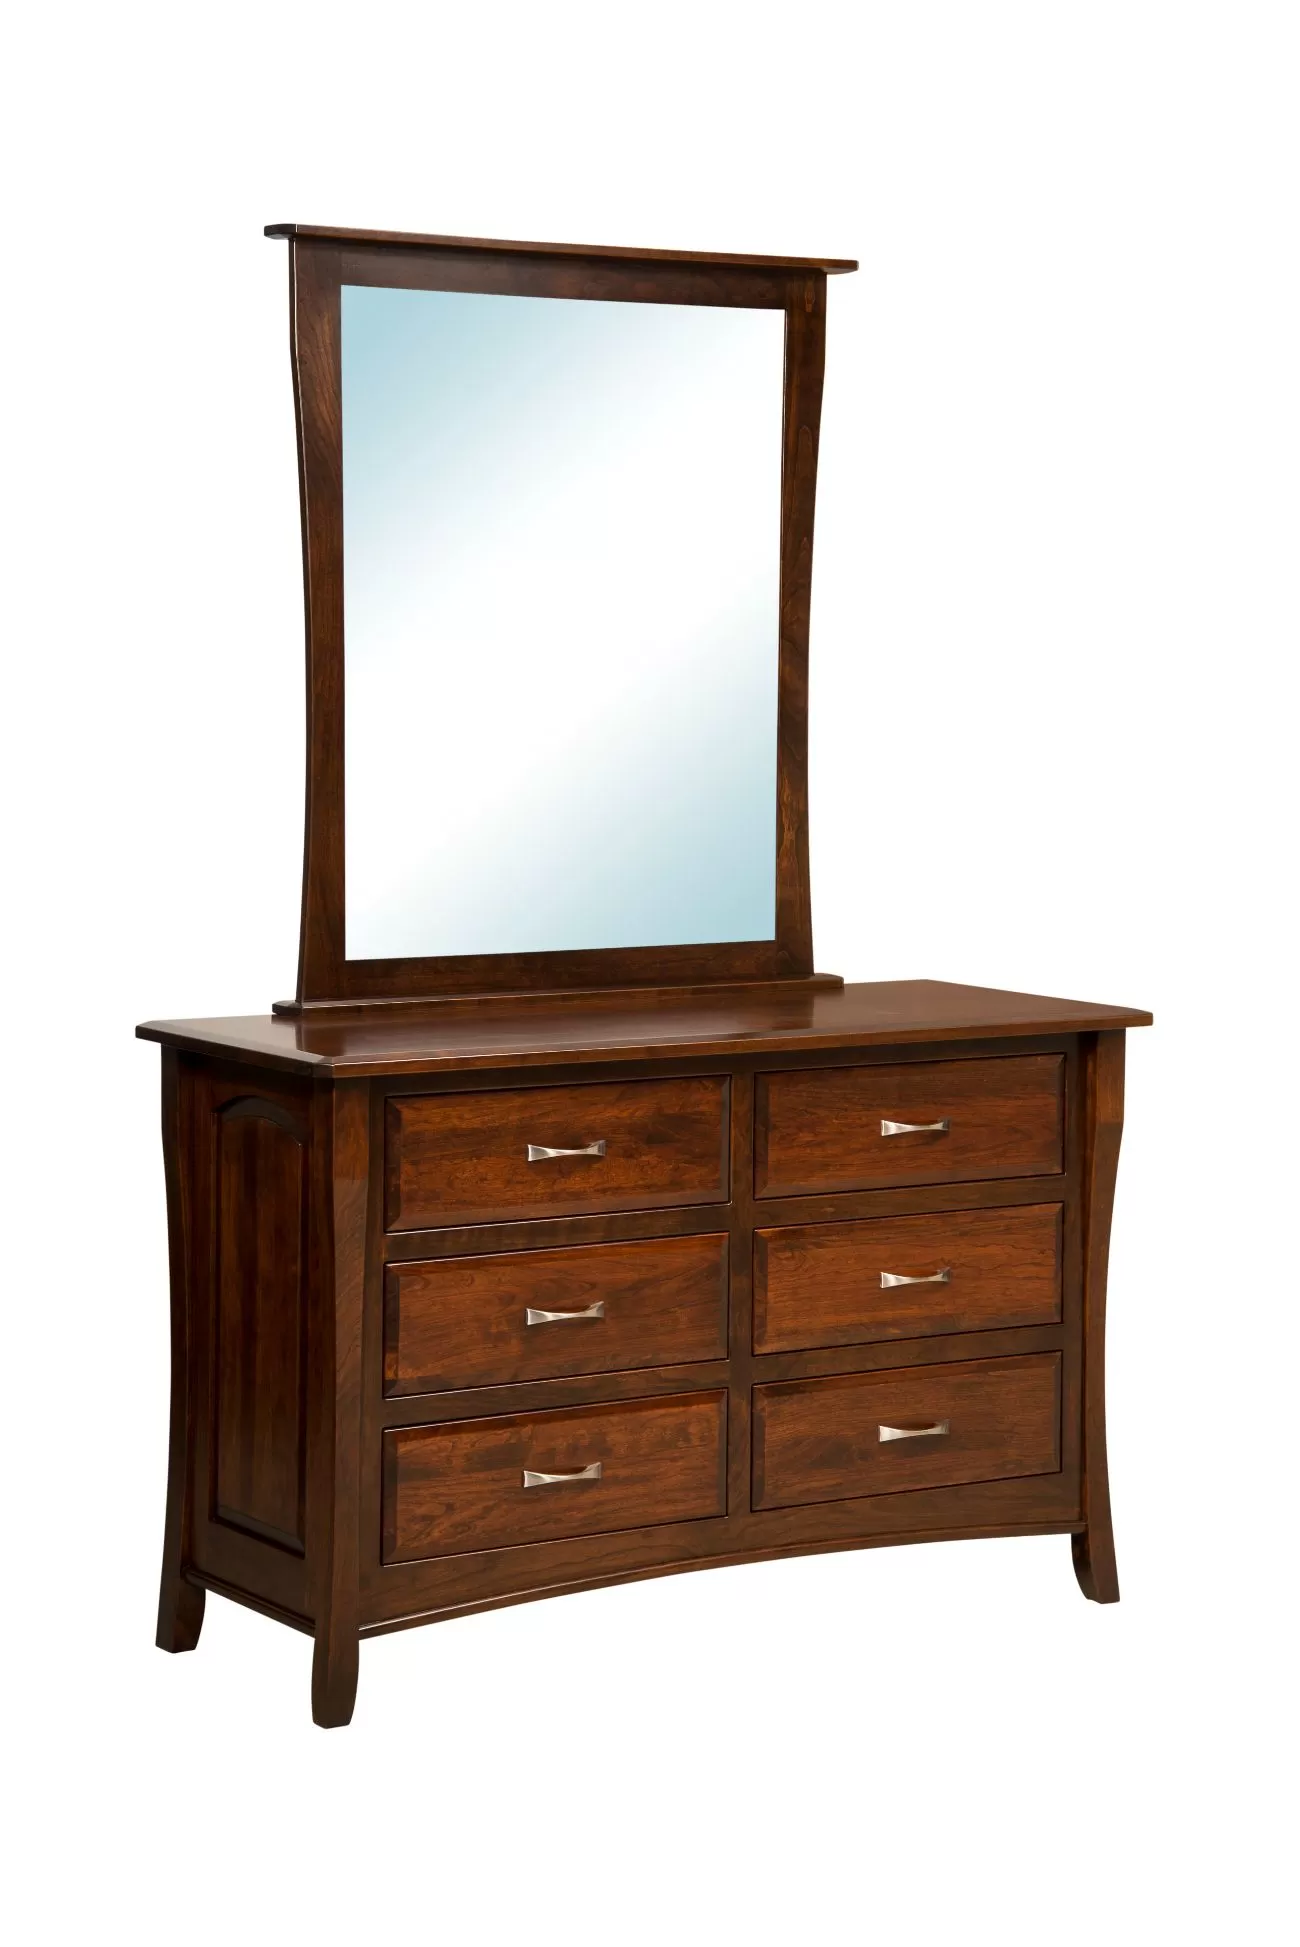 Berkley 906 6 drawer dresser with mirror